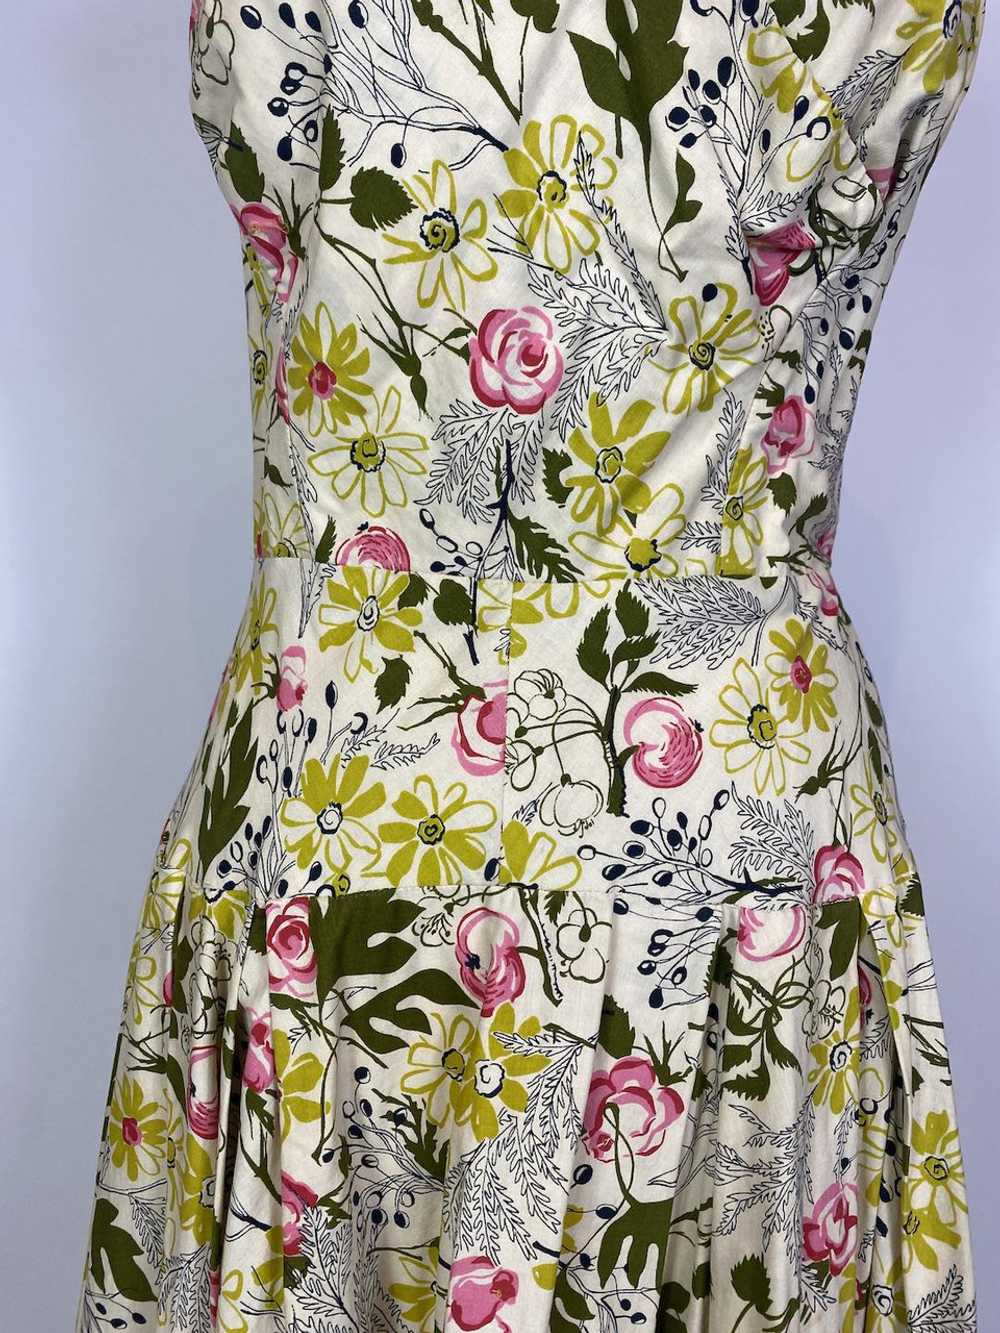 1950s - 1960s Garden Floral Print Cotton Maxi Dre… - image 3